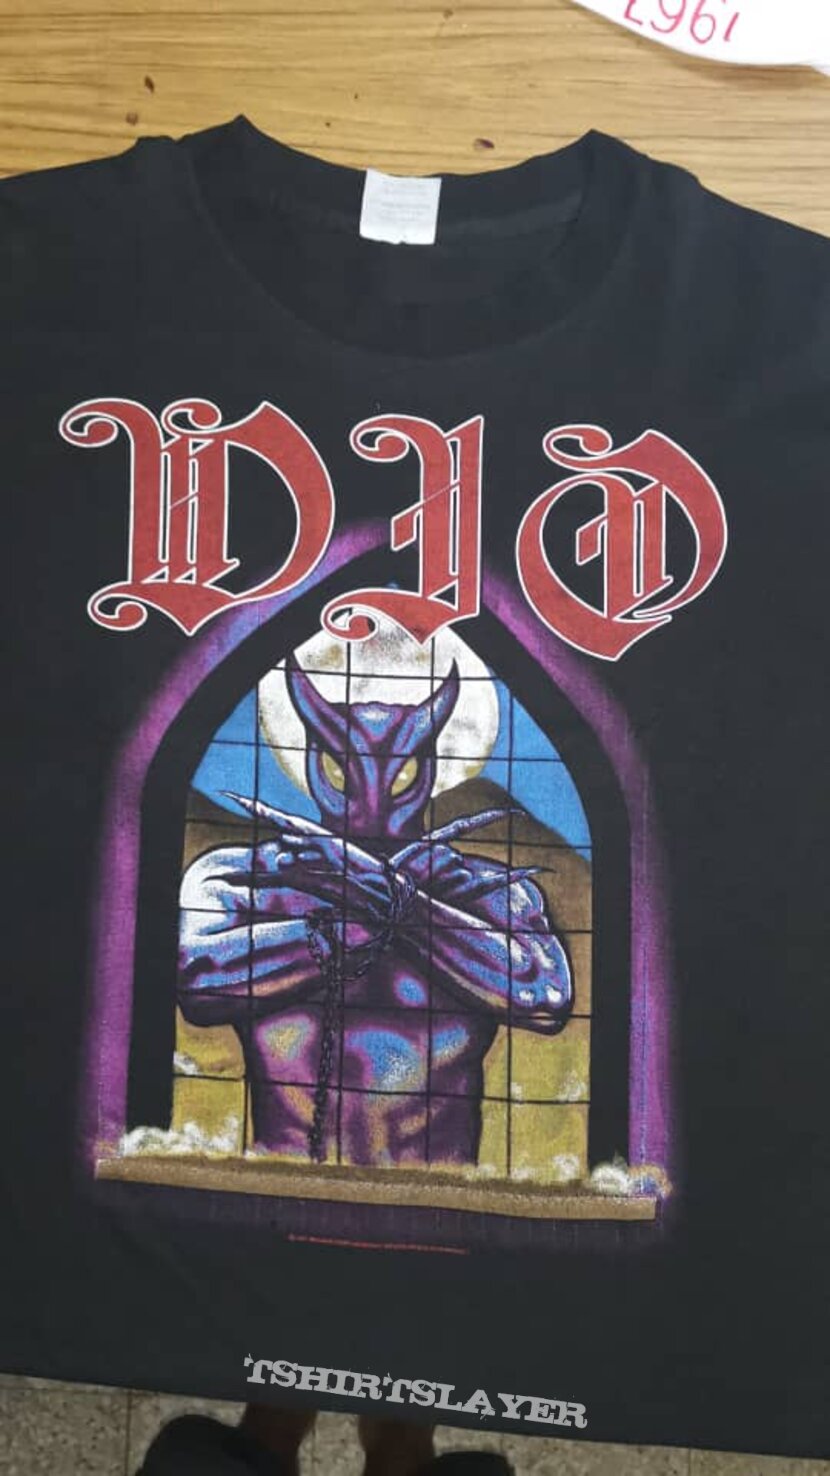 Dio Tour America 80s